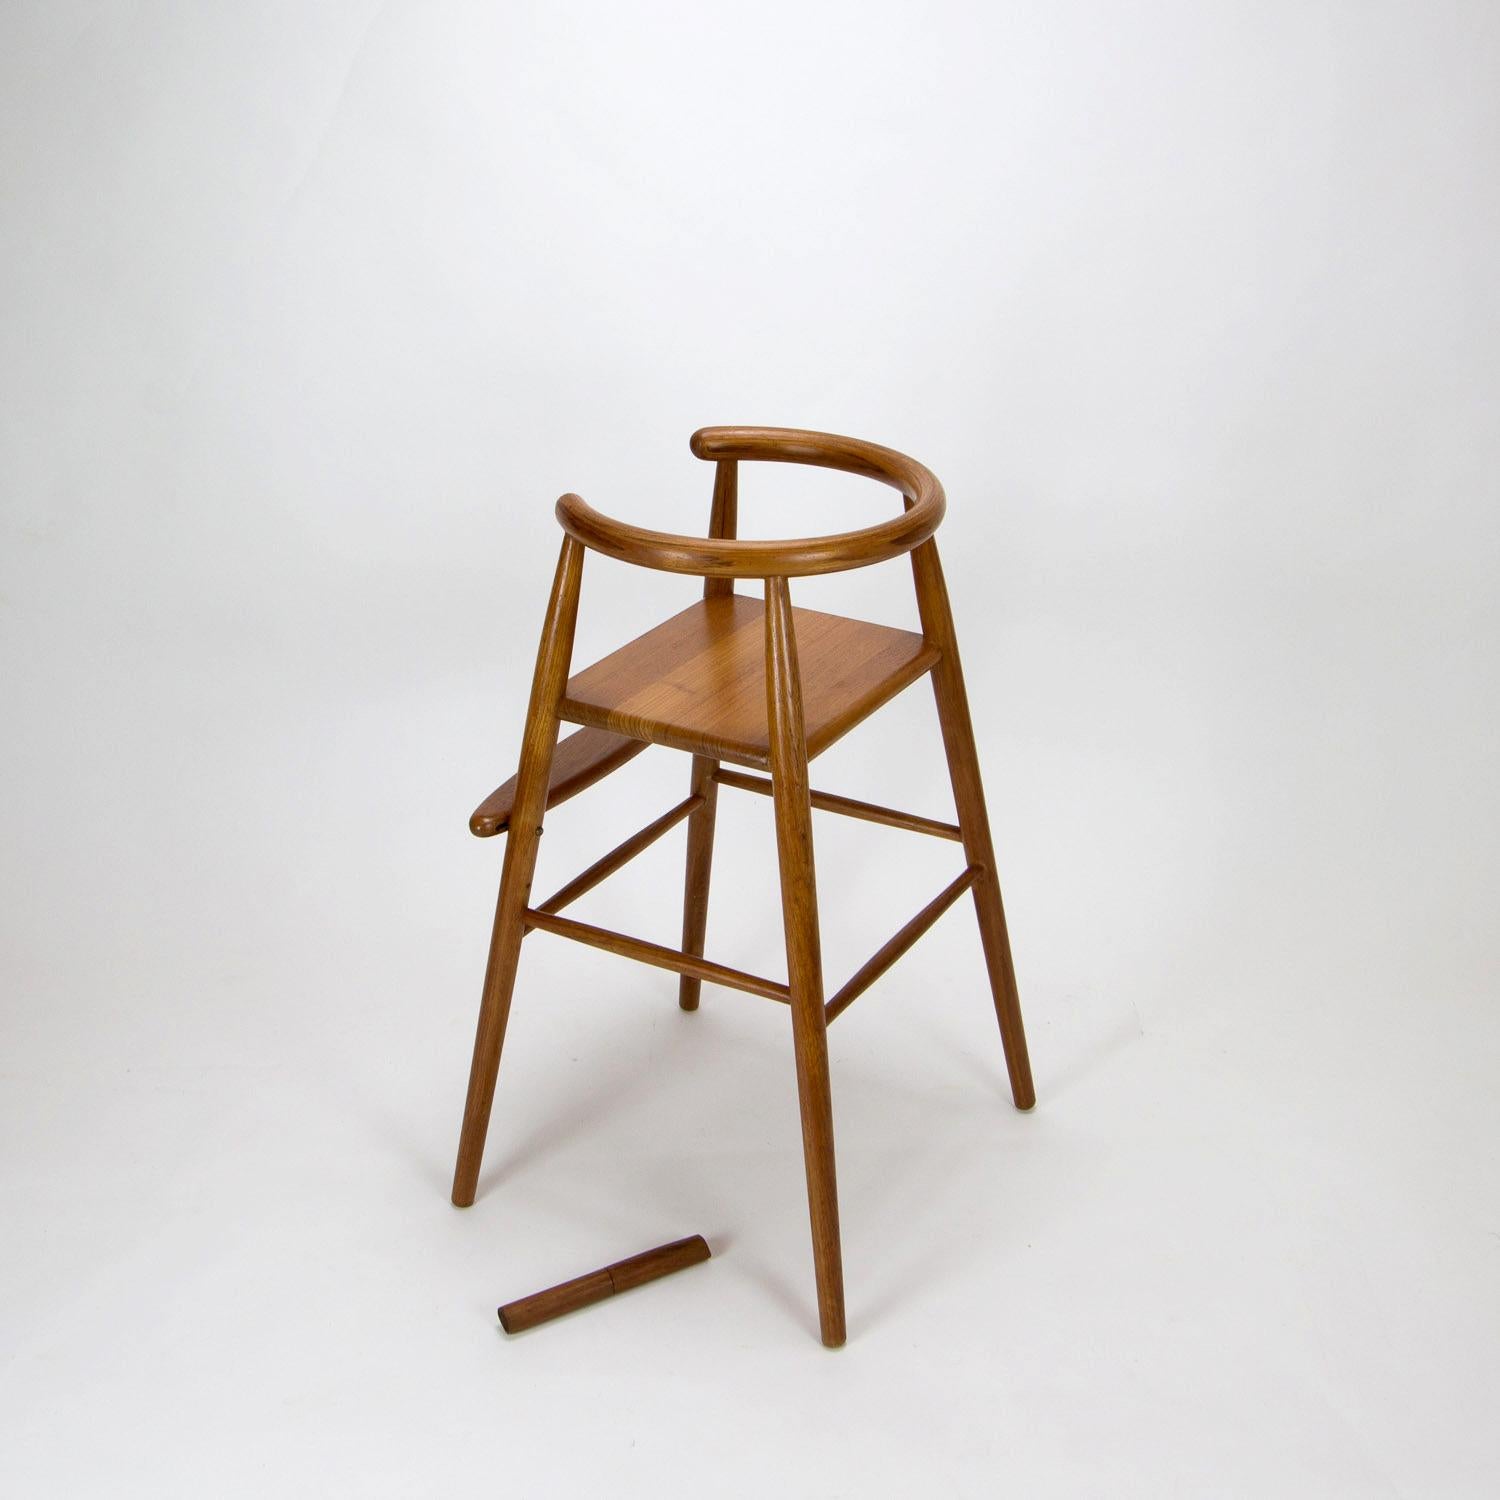 Danish Nanna Ditzel Model 115 Midcentury Child’s High Chair in Teak, Denmark